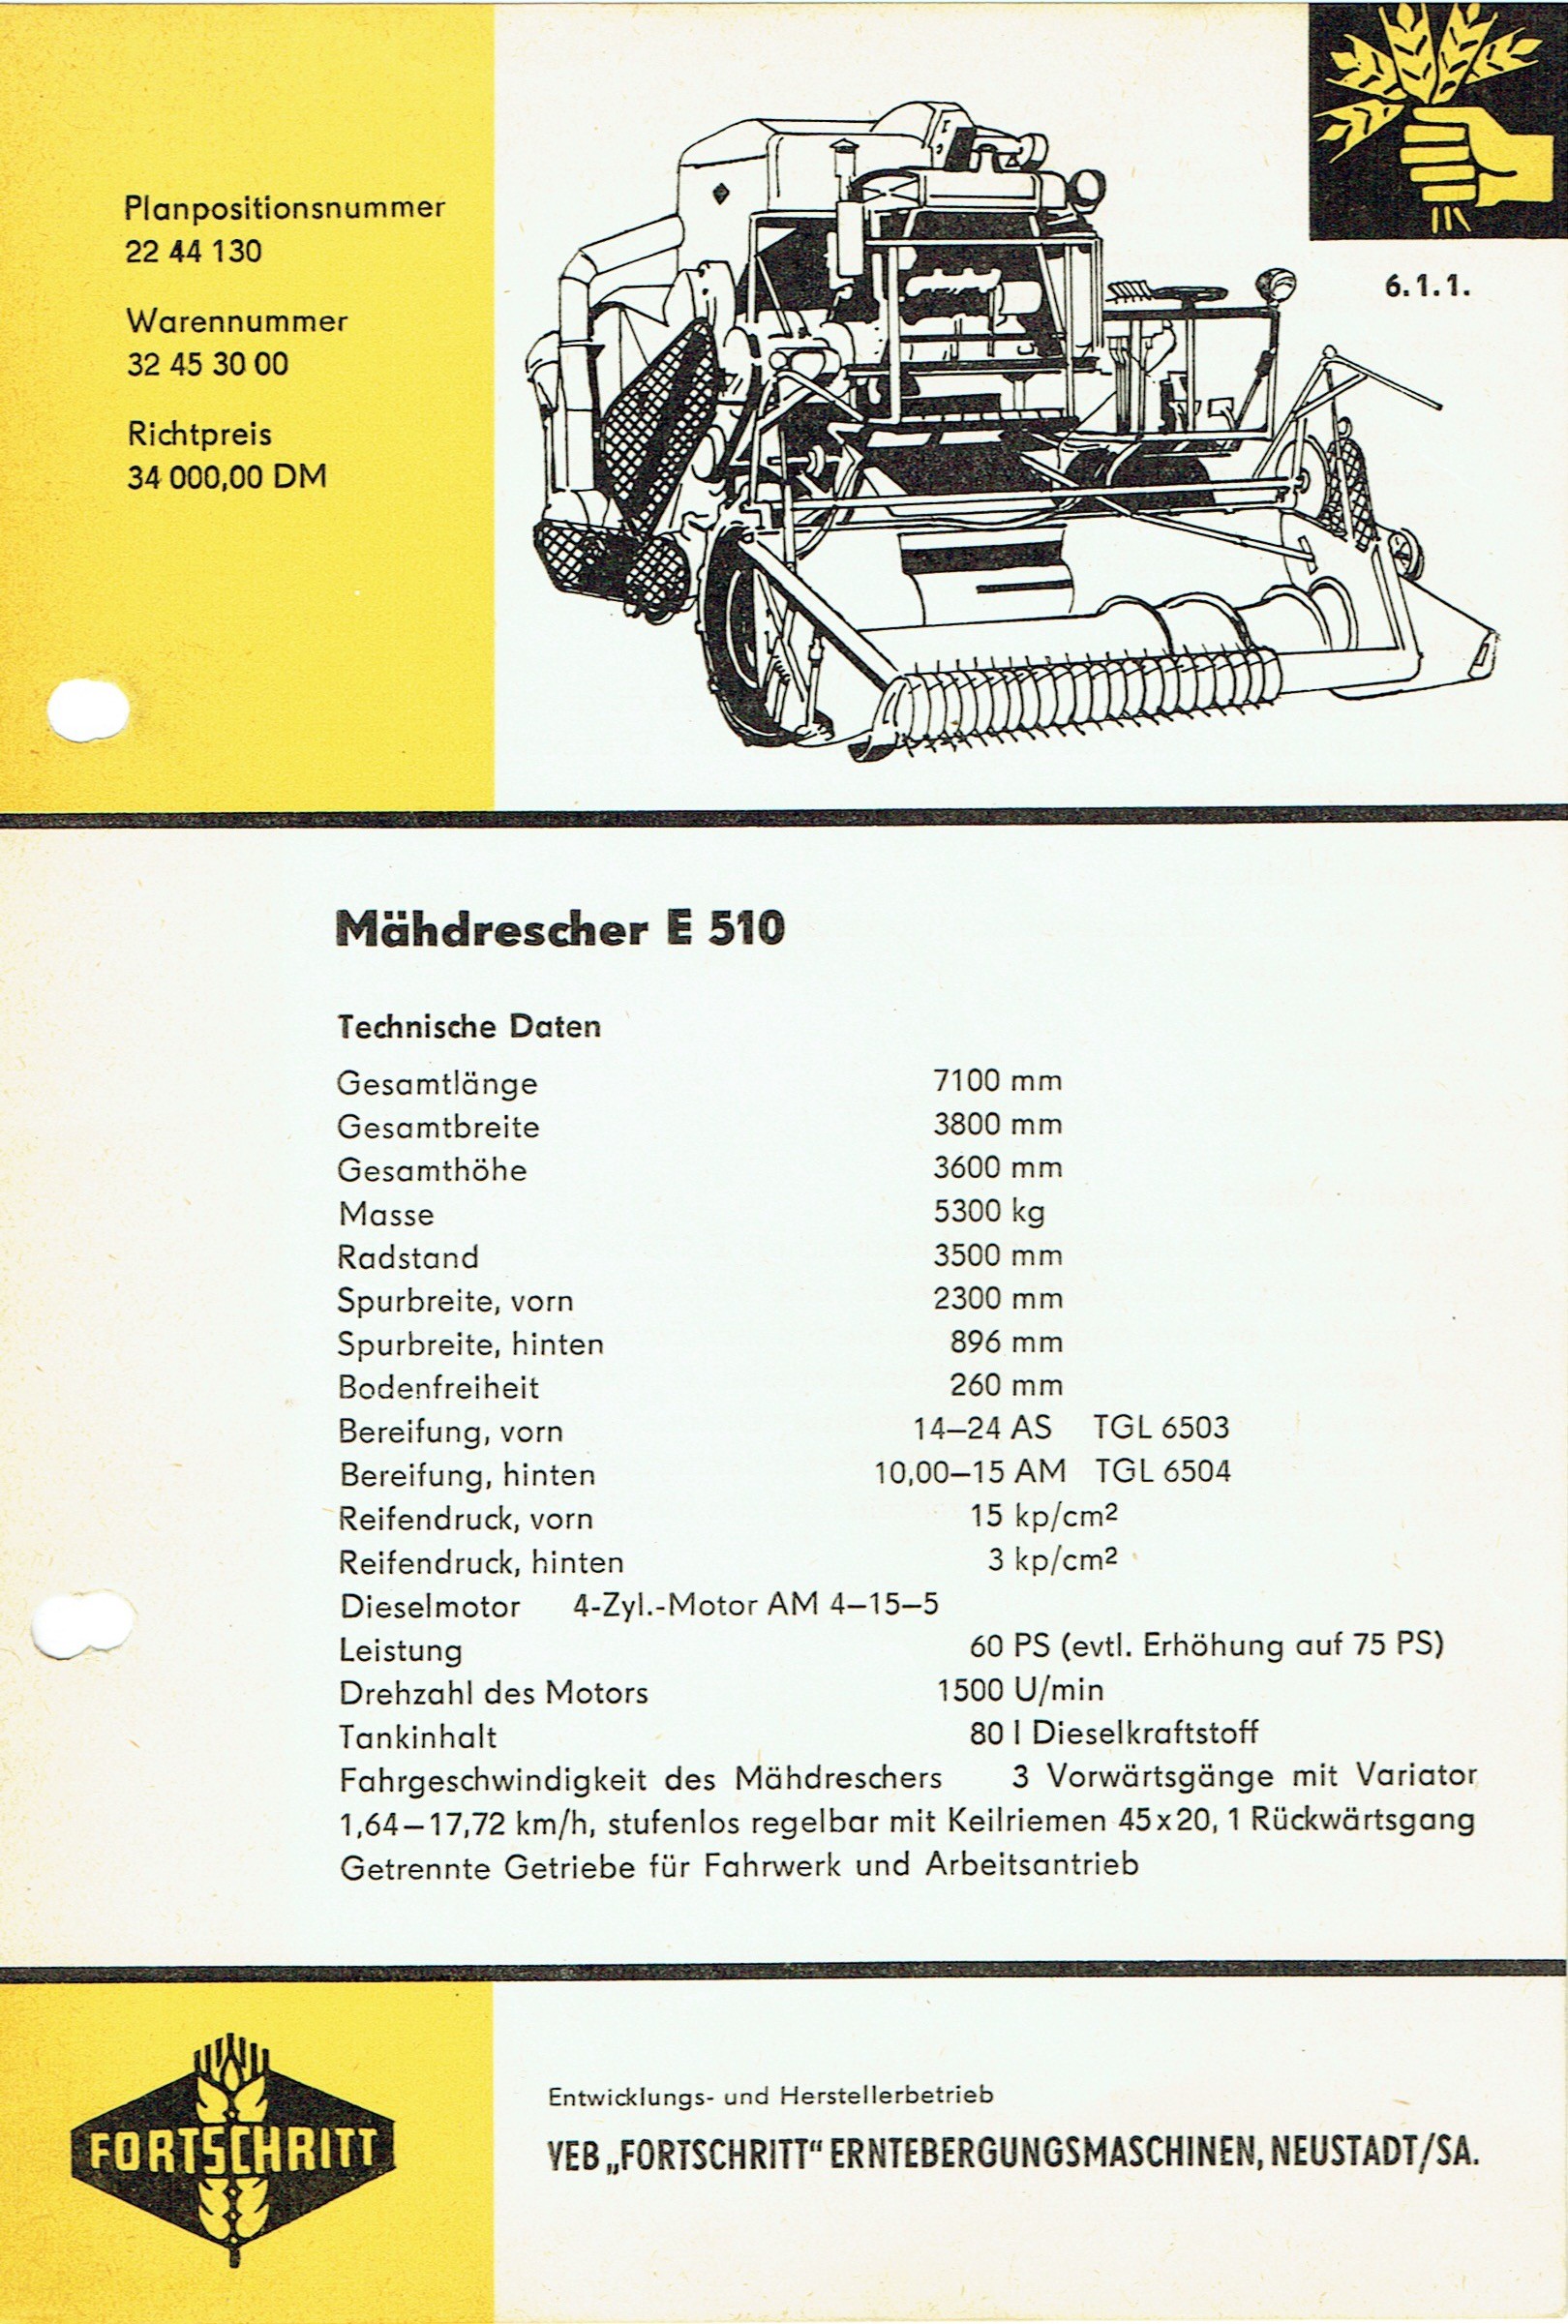 VEB Fortschritt Erntebergungsmaschinen E510 (Mähdrescherarchiv Kühnstetter CC BY-NC-SA)